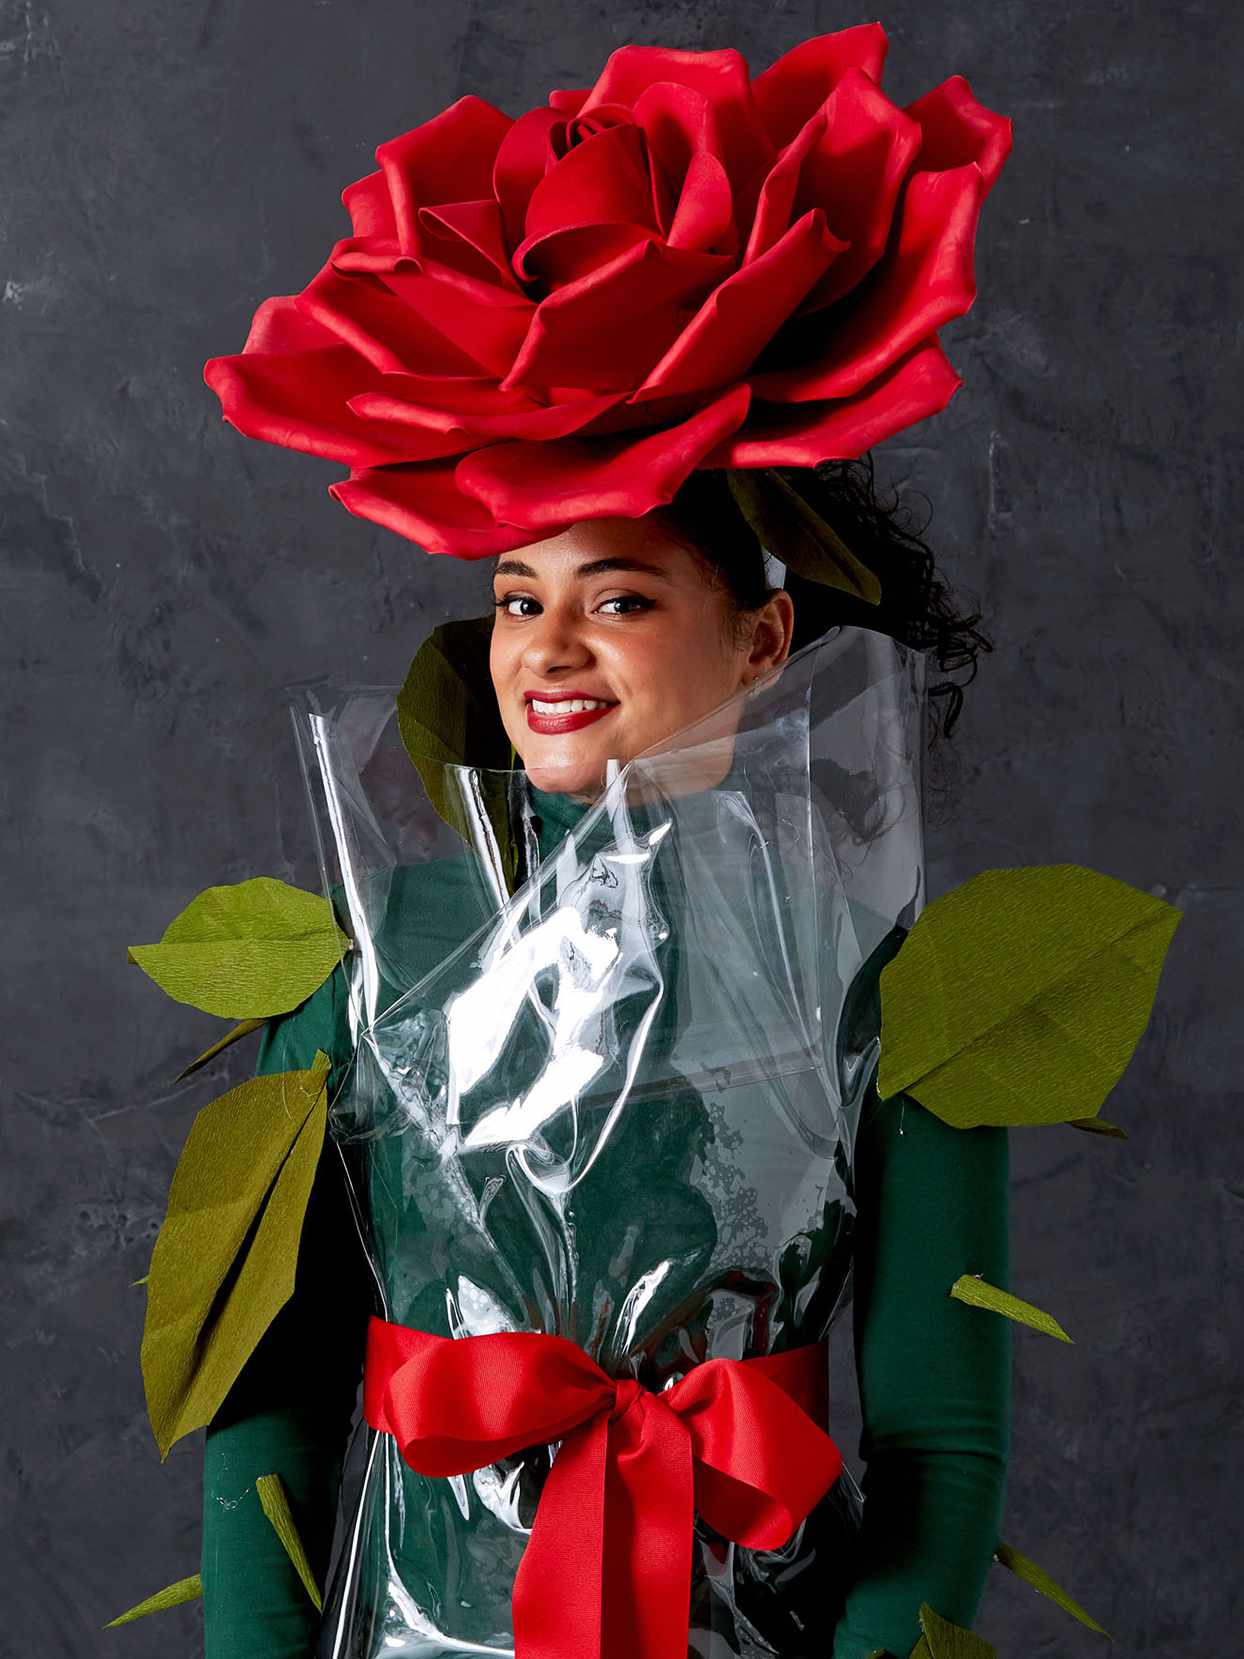 wrapped deli rose costume